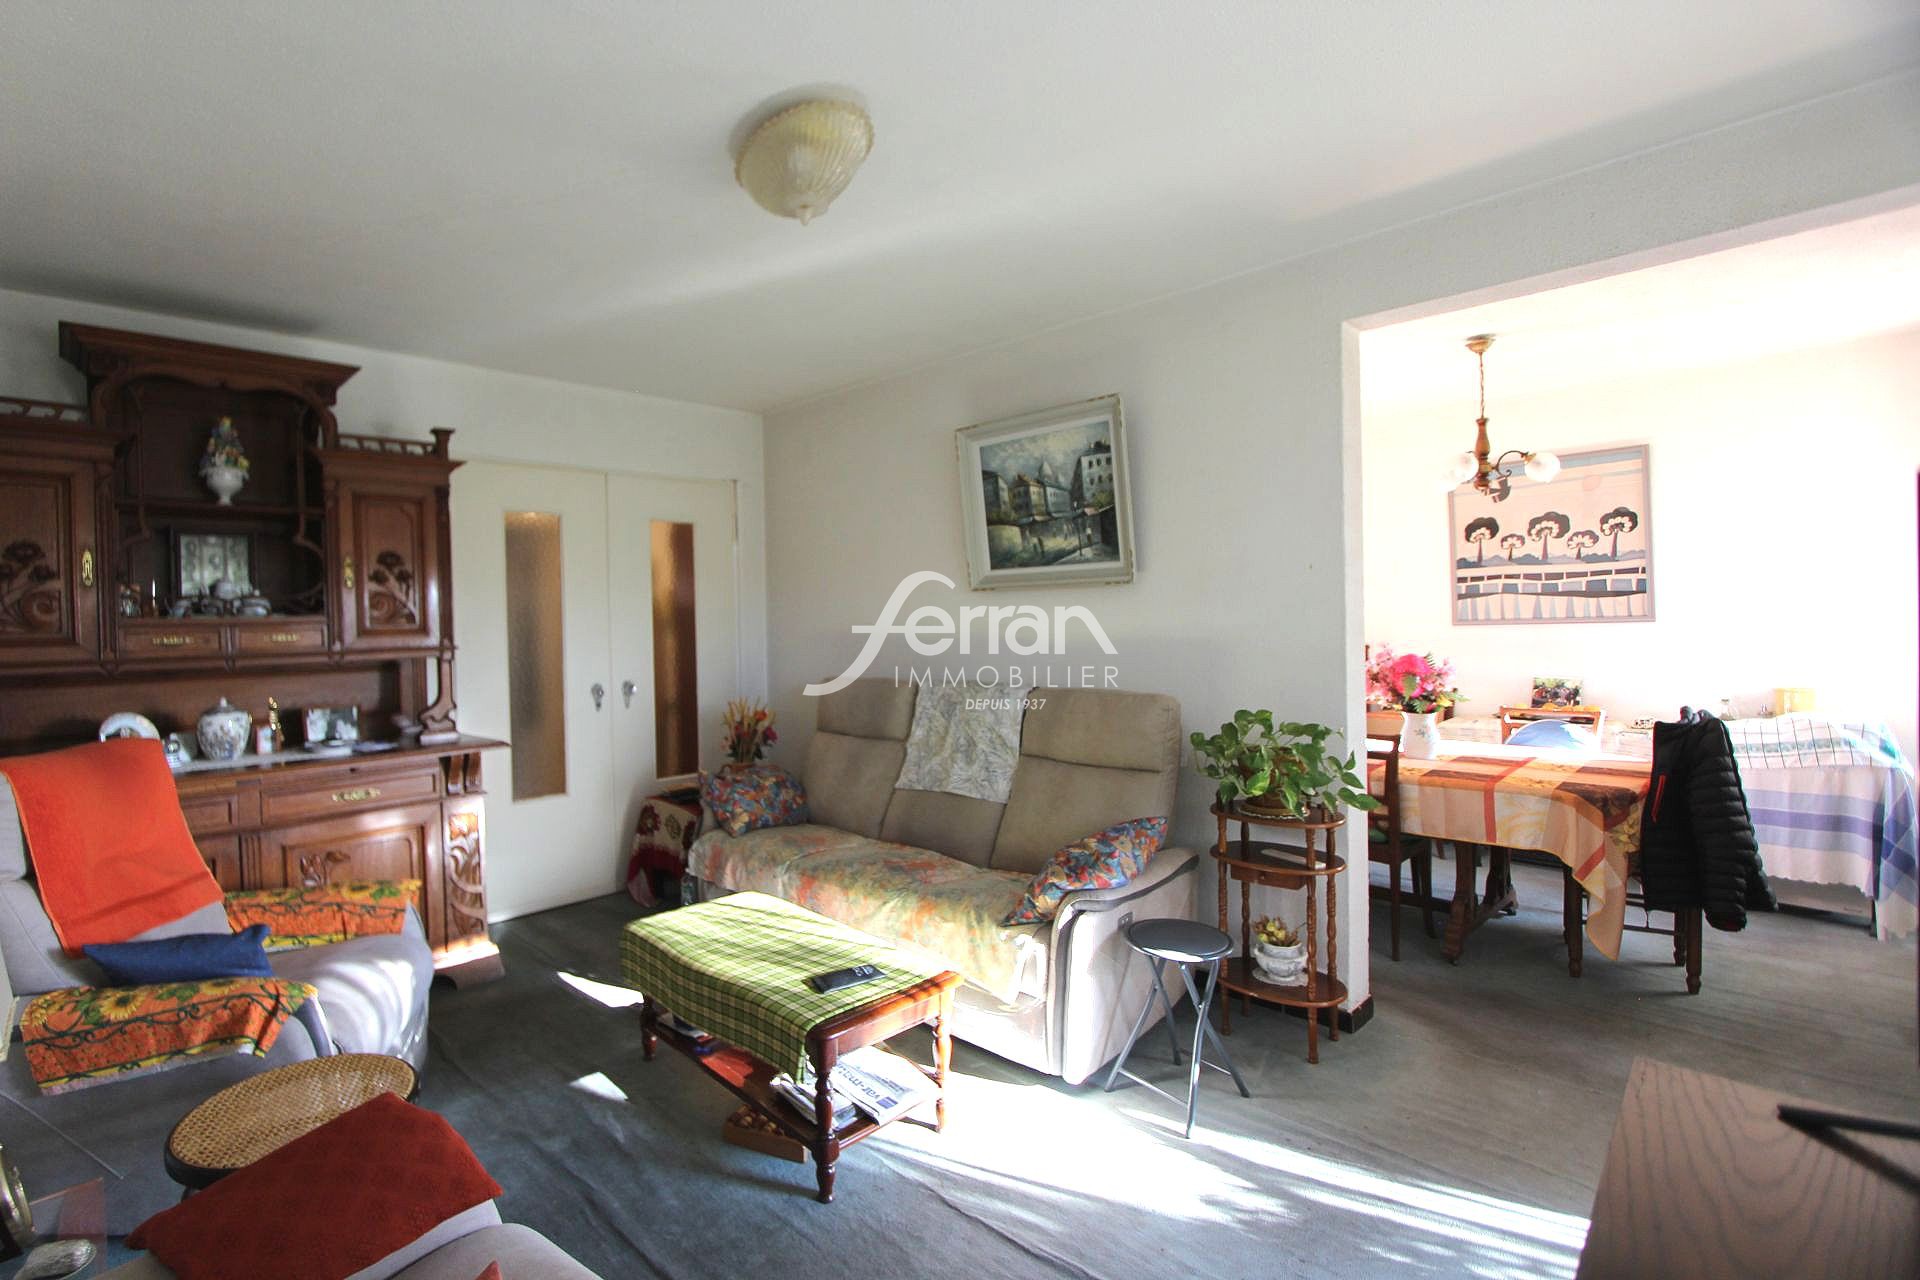 Vente Appartement 65m² à Draguignan (83300) - Ferran Immobilier